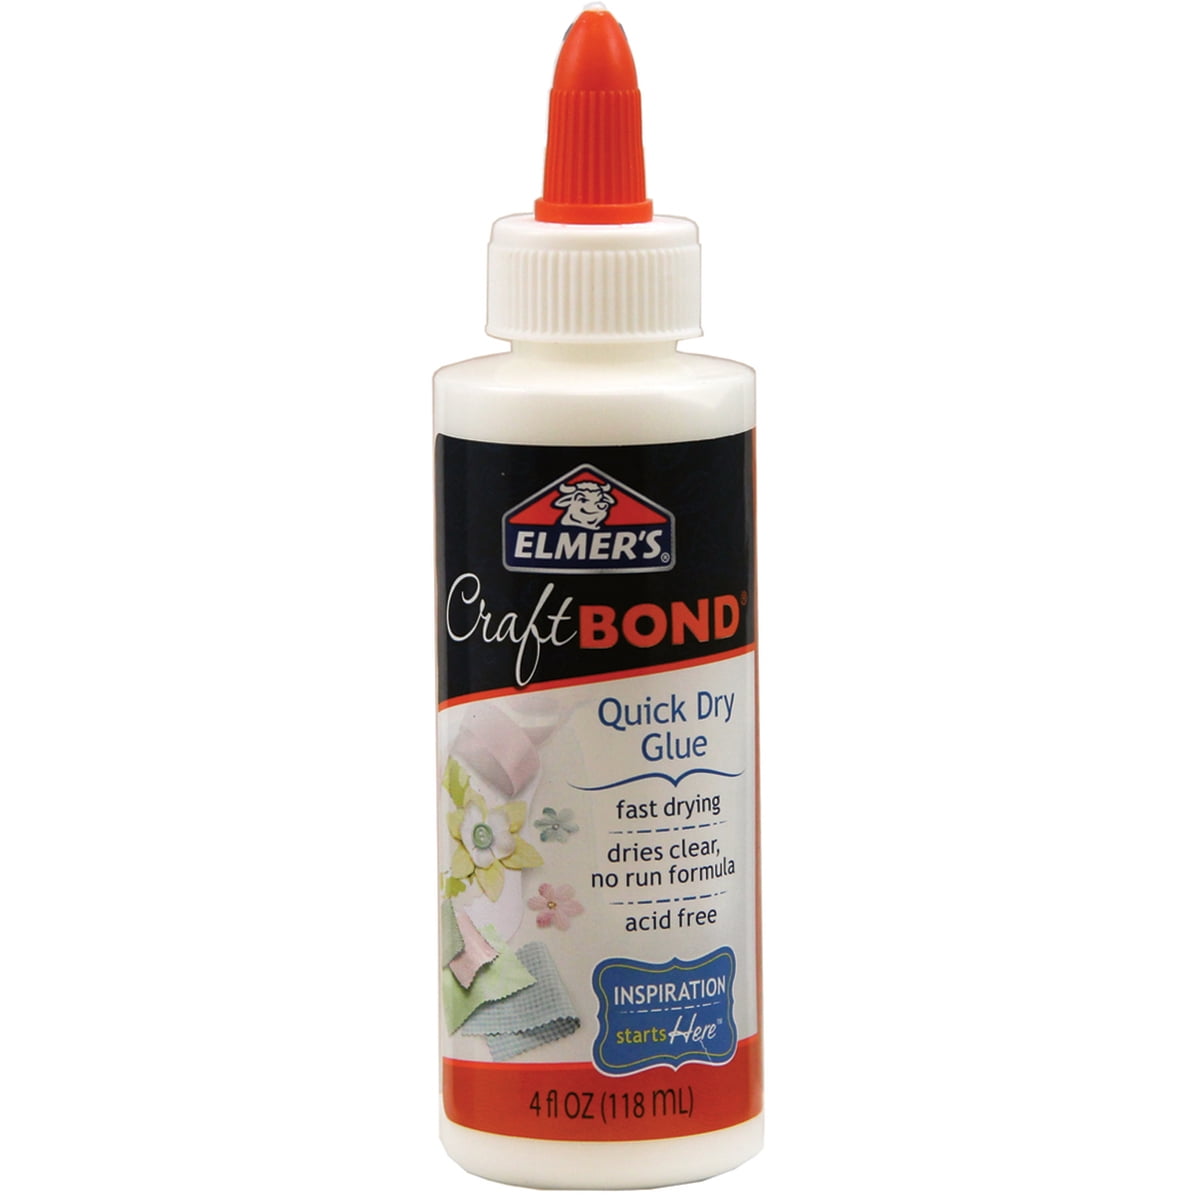 Elmer's CraftBond Quick Dry Glue - 4 oz